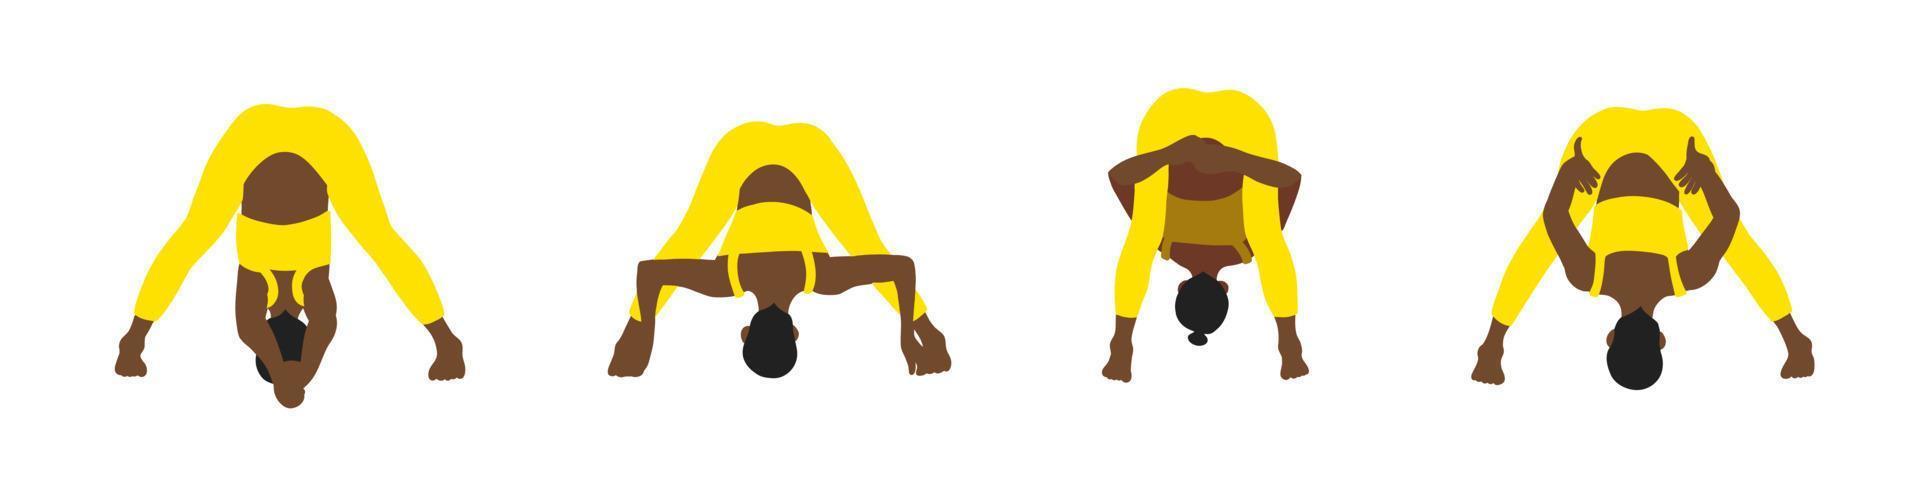 Yoga-Posen-Sammlung. Afroamerikaner. weibliches frau mädchen. vektorillustration im flachen stil der karikatur lokalisiert auf weißem hintergrund. vektor